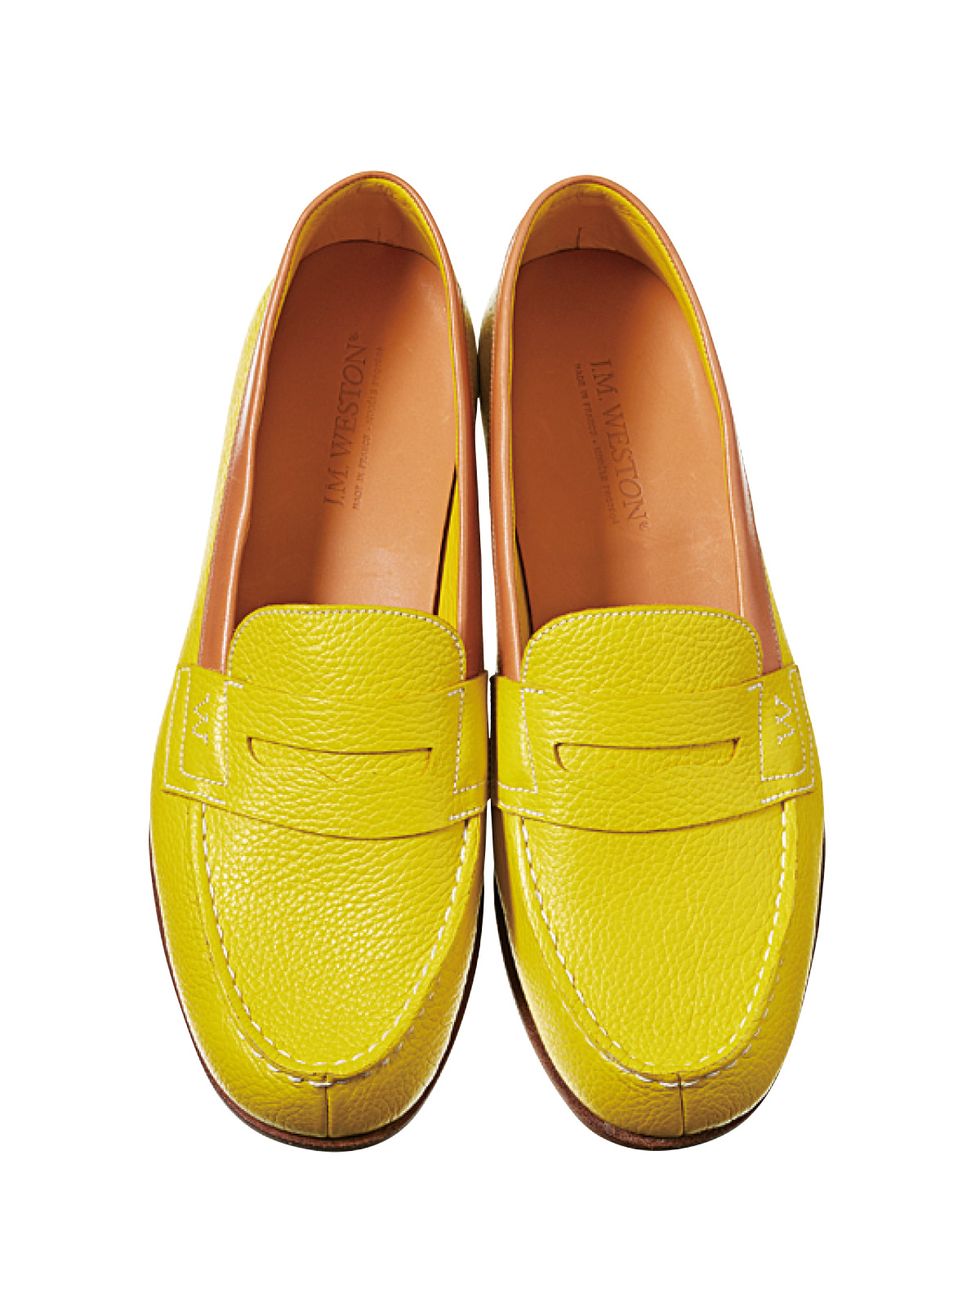 Footwear, Brown, Shoe, Yellow, Product, Tan, Beige, Dress shoe, Leather, 